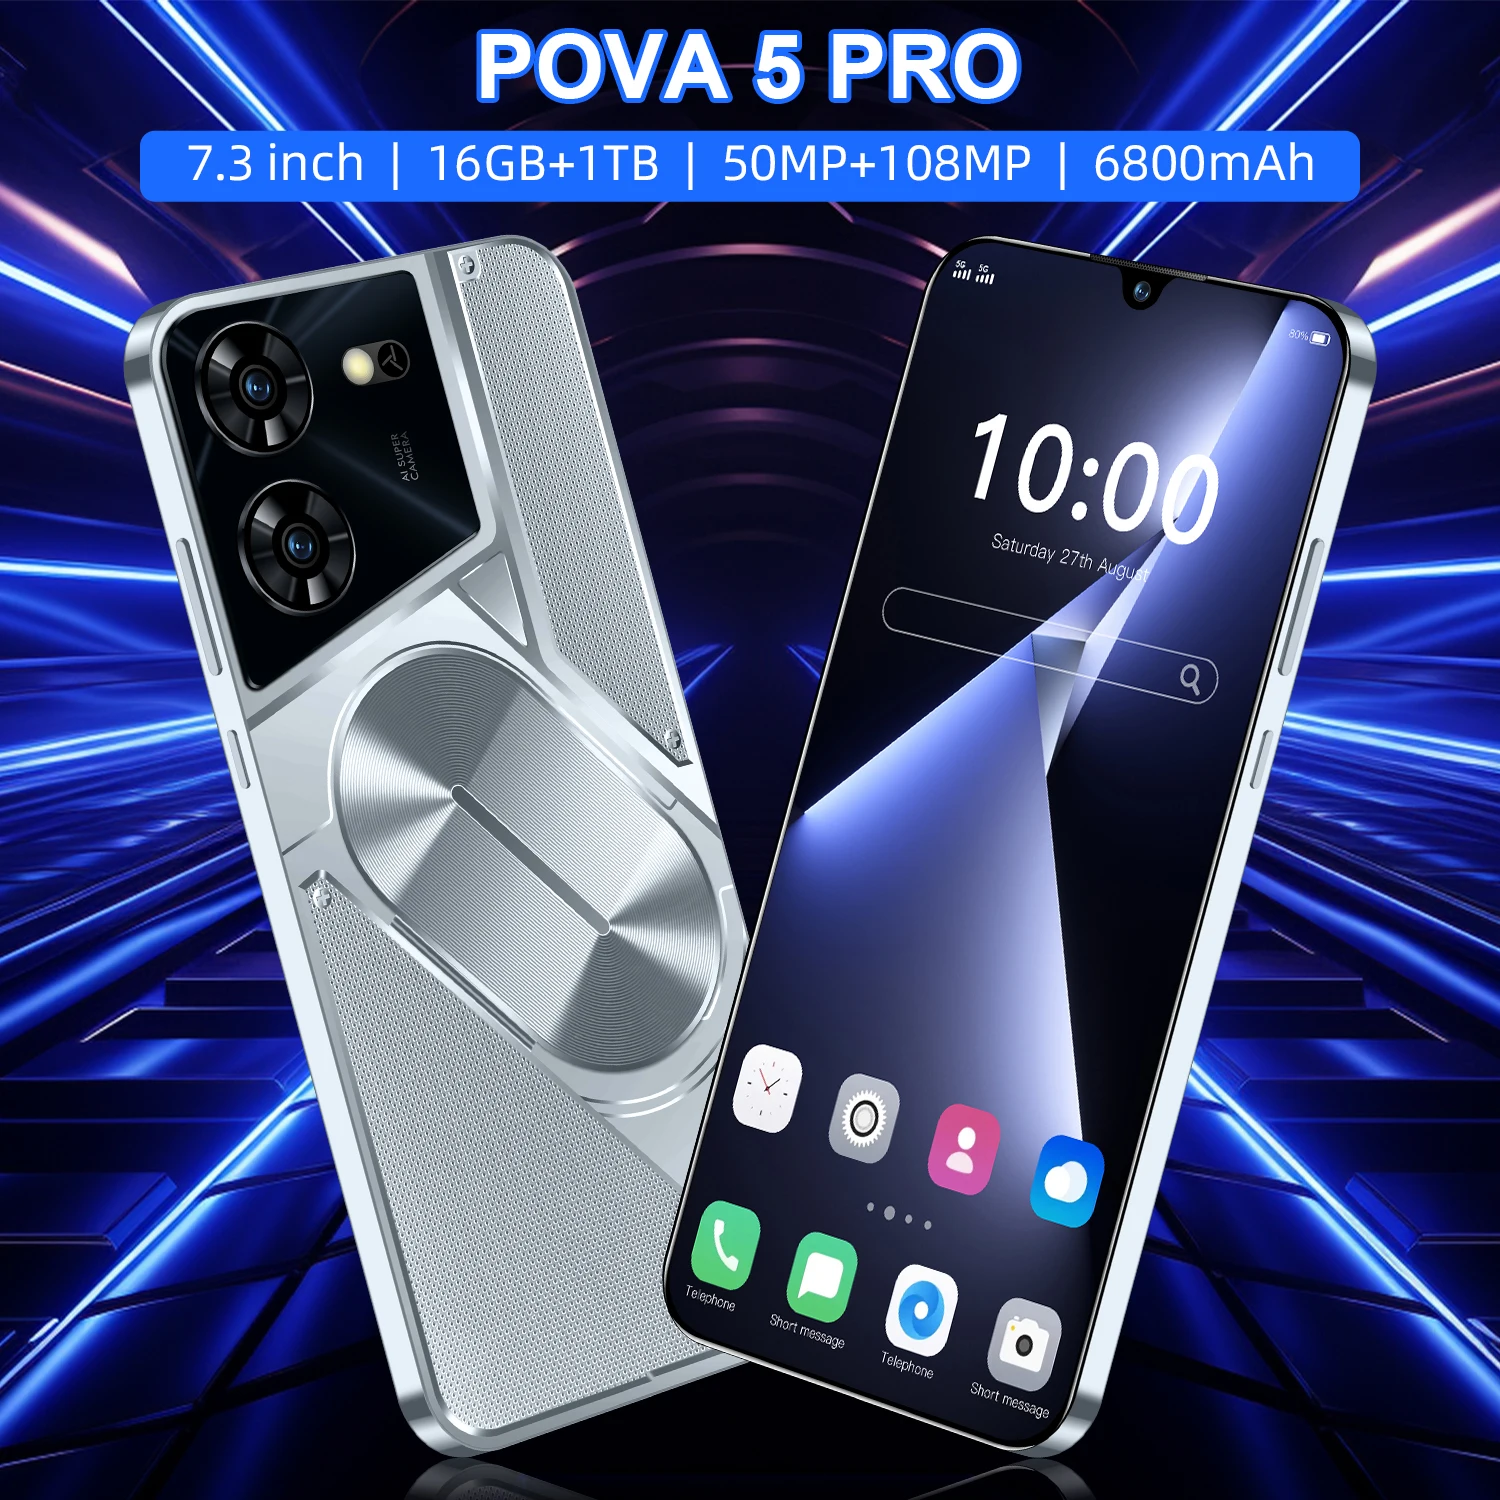 

Оригинальный смартфон глобальная версия Pova 5 Pro, 9300 дюймов, 16 ГБ + 1 ТБ, 6800 мАч, 50 Мп + Мп, 4G